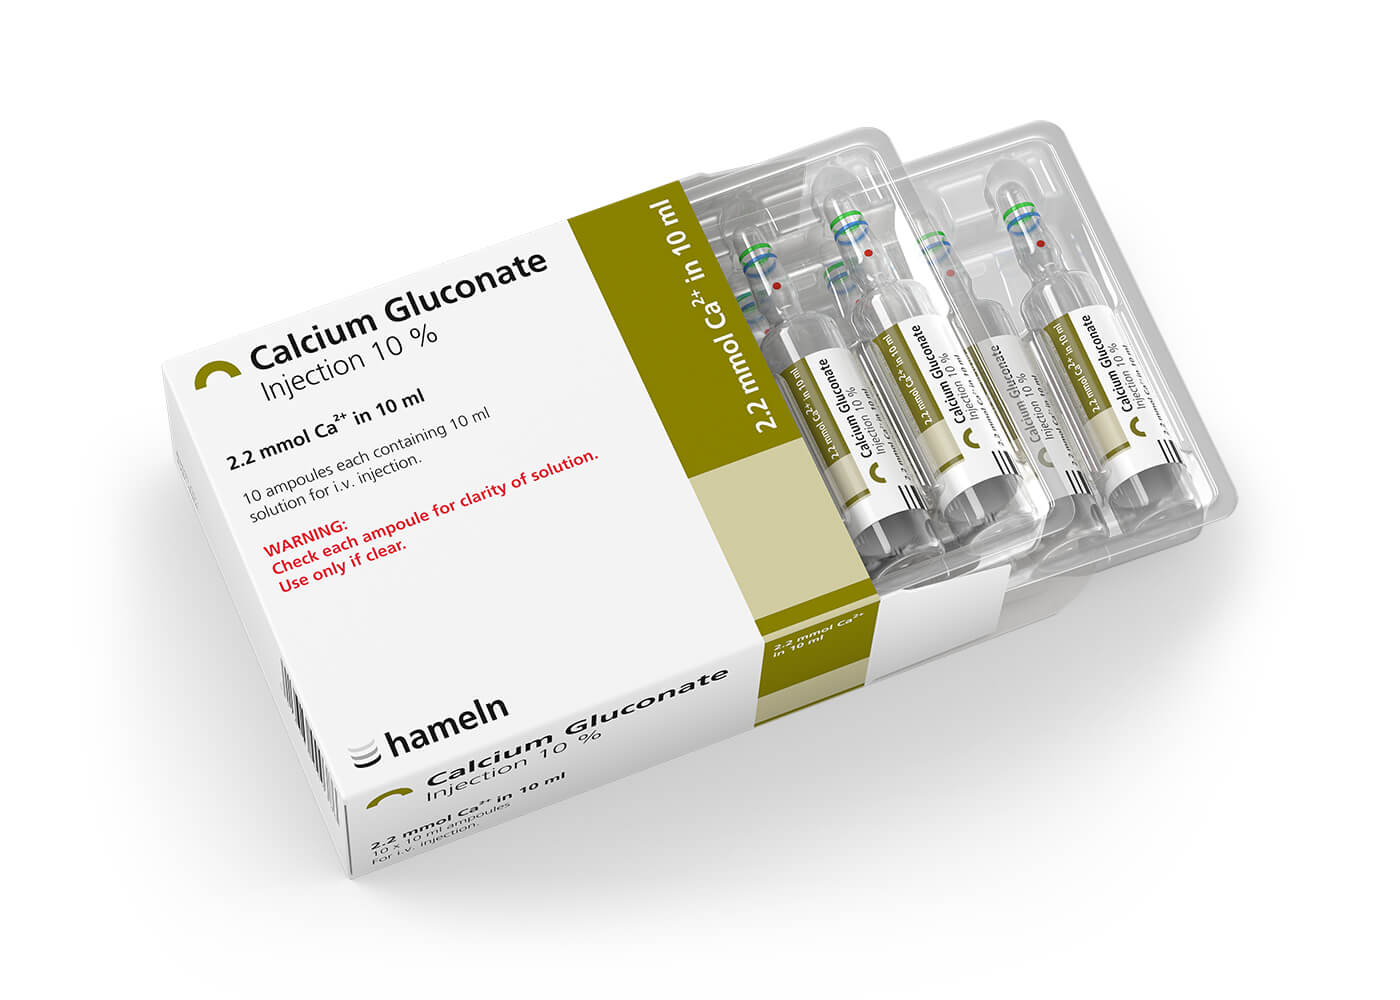 CalciumGluconate_10pc_in_10_ml_Pack-Amp_10St_20-2013